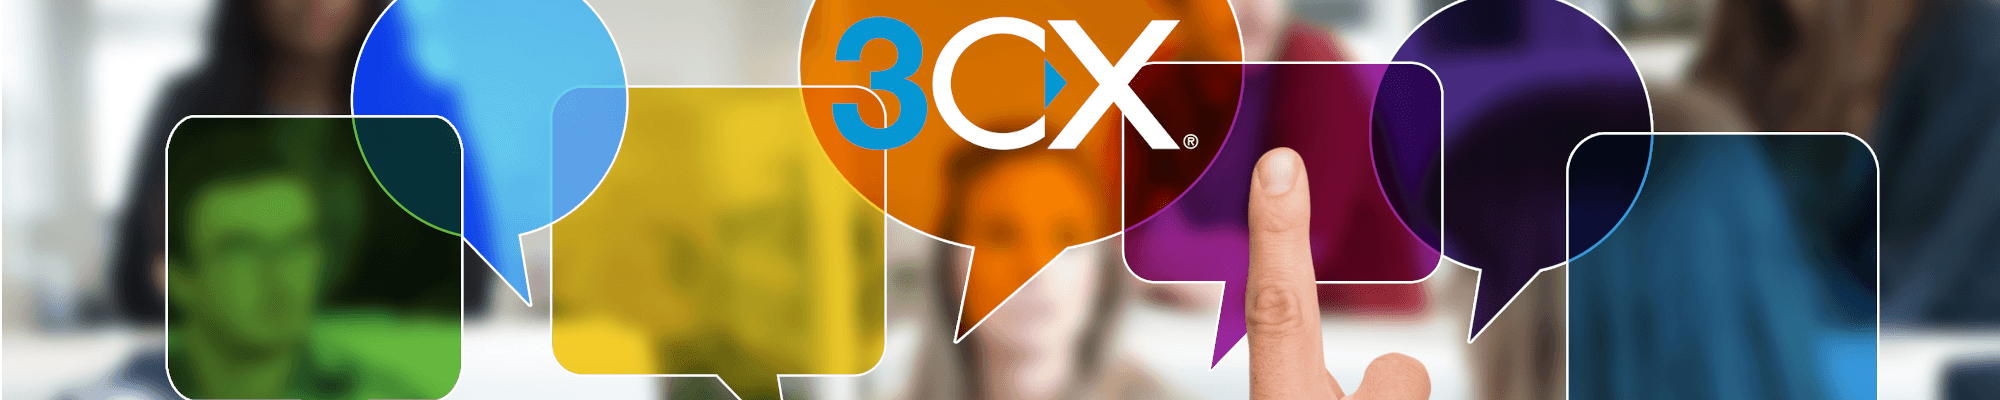 3CX Chat